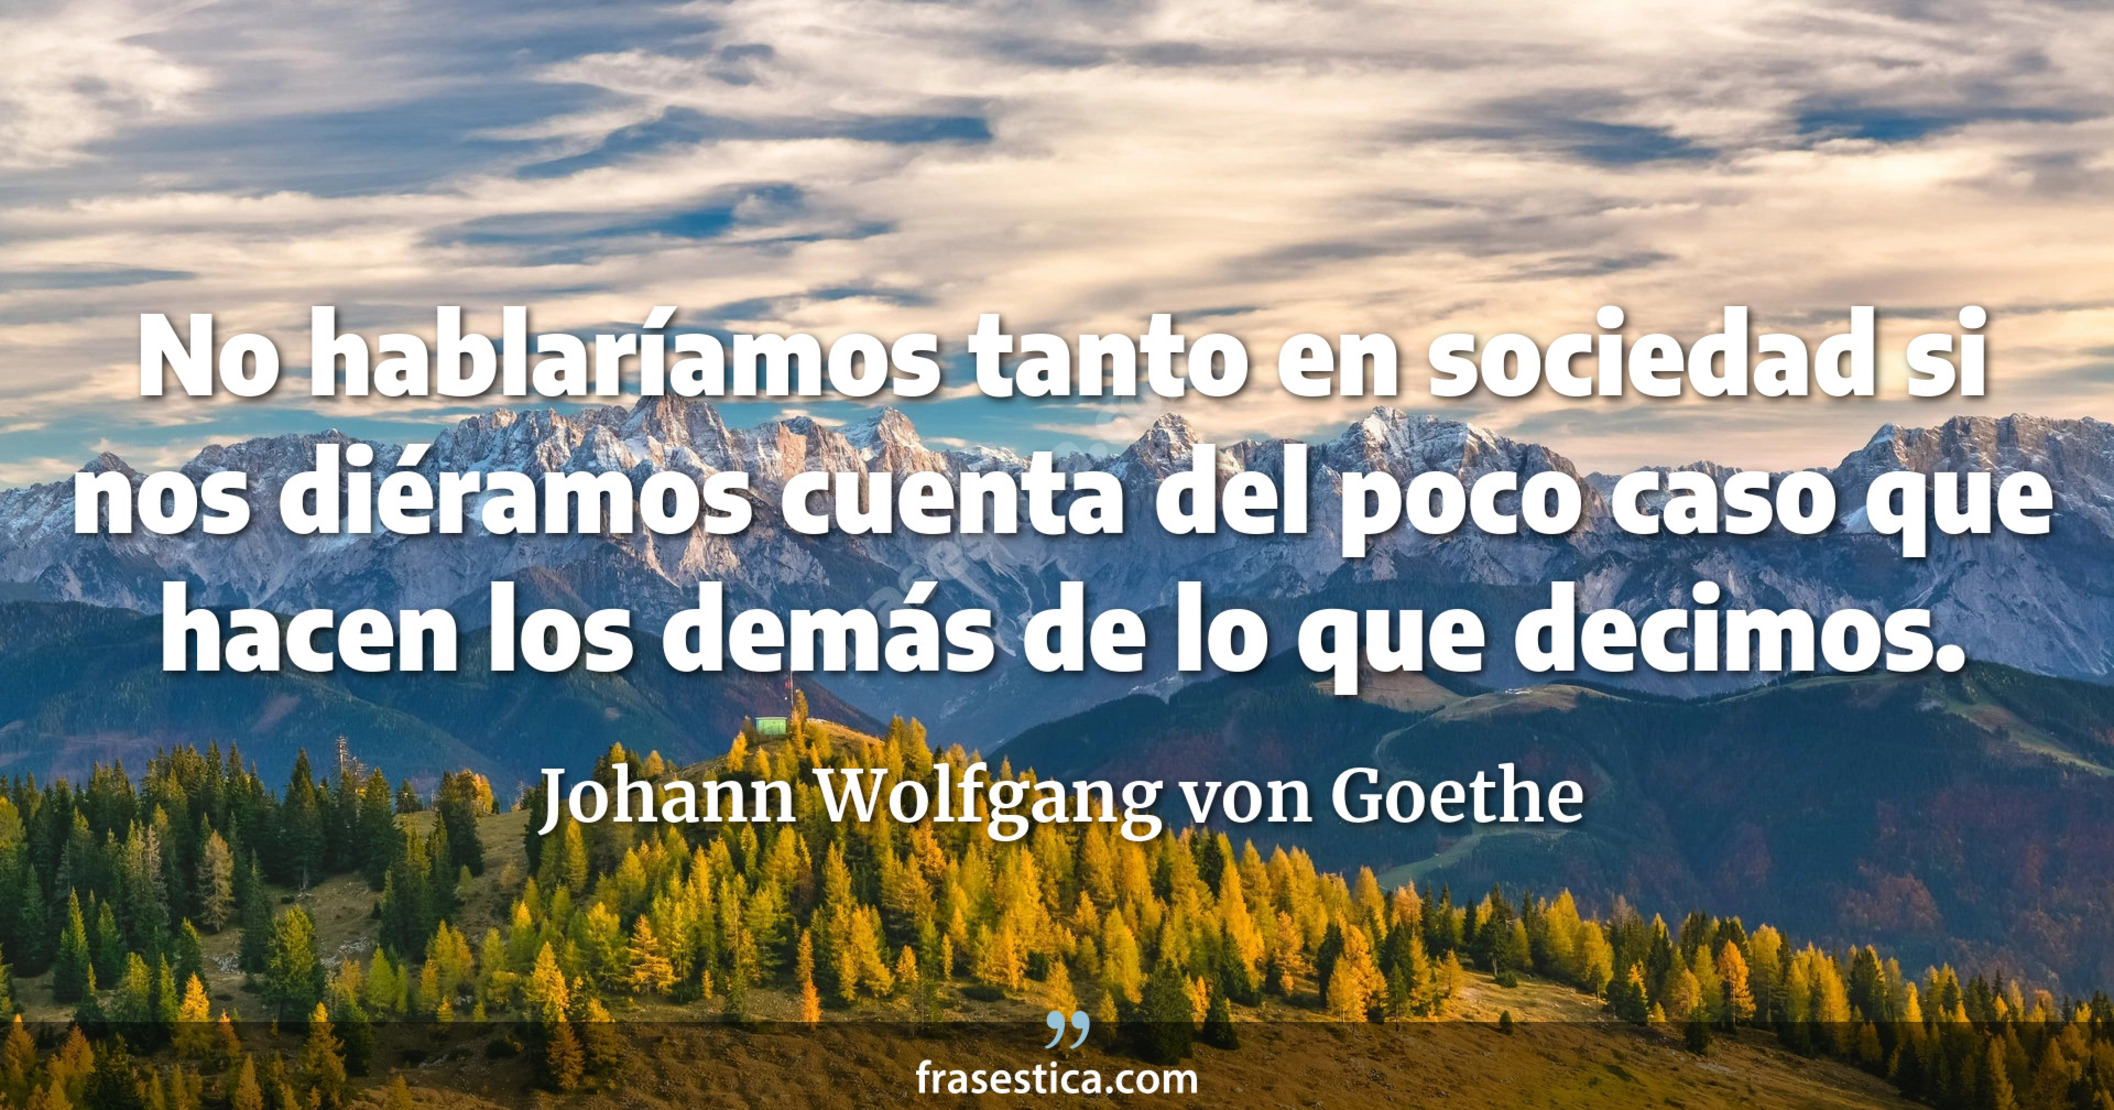 No hablaríamos tanto en sociedad si nos diéramos cuenta del poco caso que hacen los demás de lo que decimos. - Johann Wolfgang von Goethe